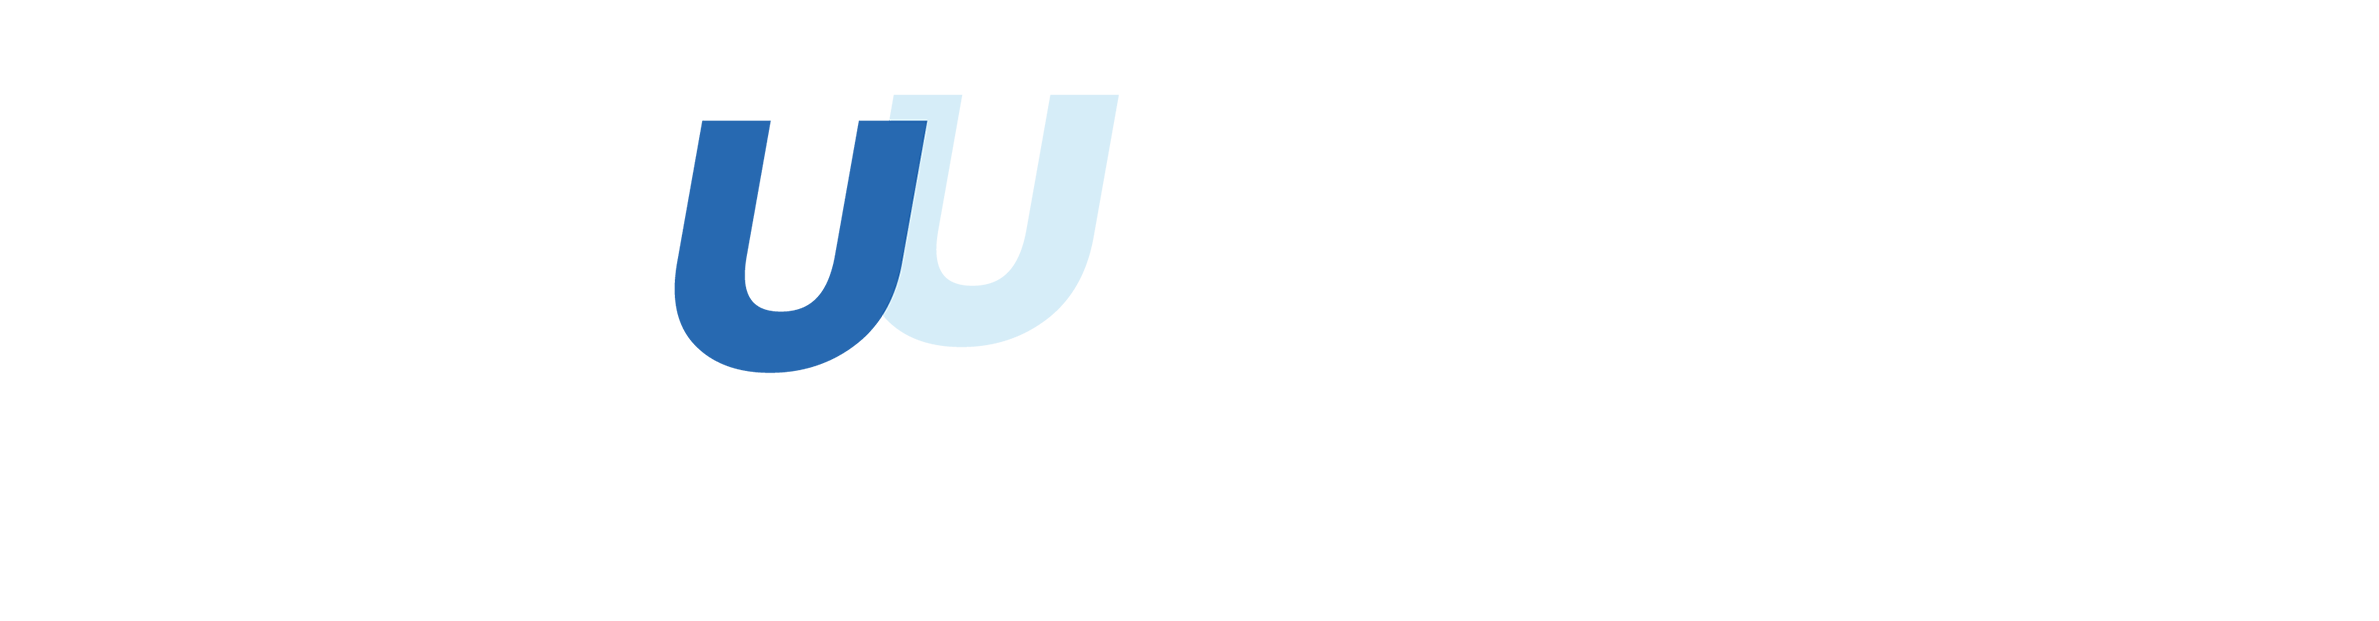 Laguun virtual CISO evolving platform